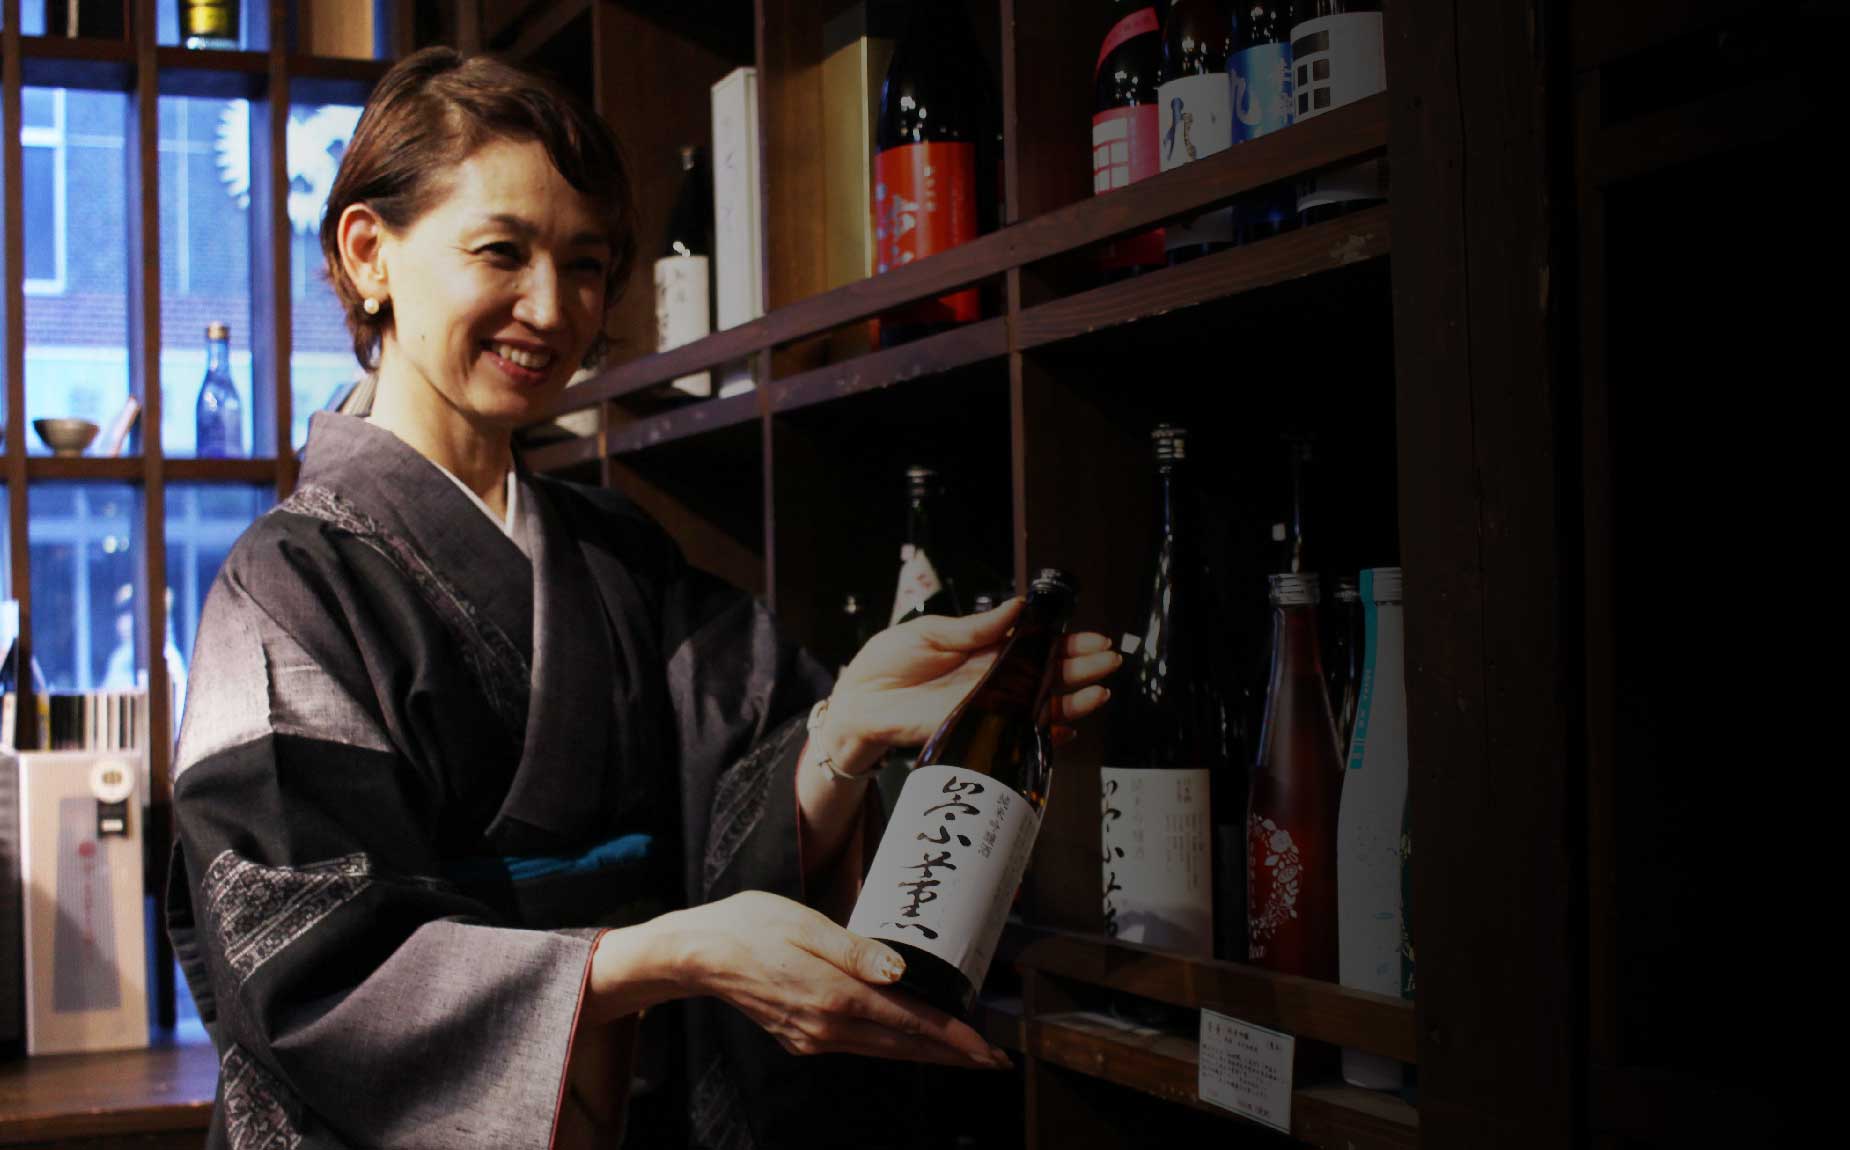 川上酒店の奥様が純米吟醸酒、崇薫をもった写真